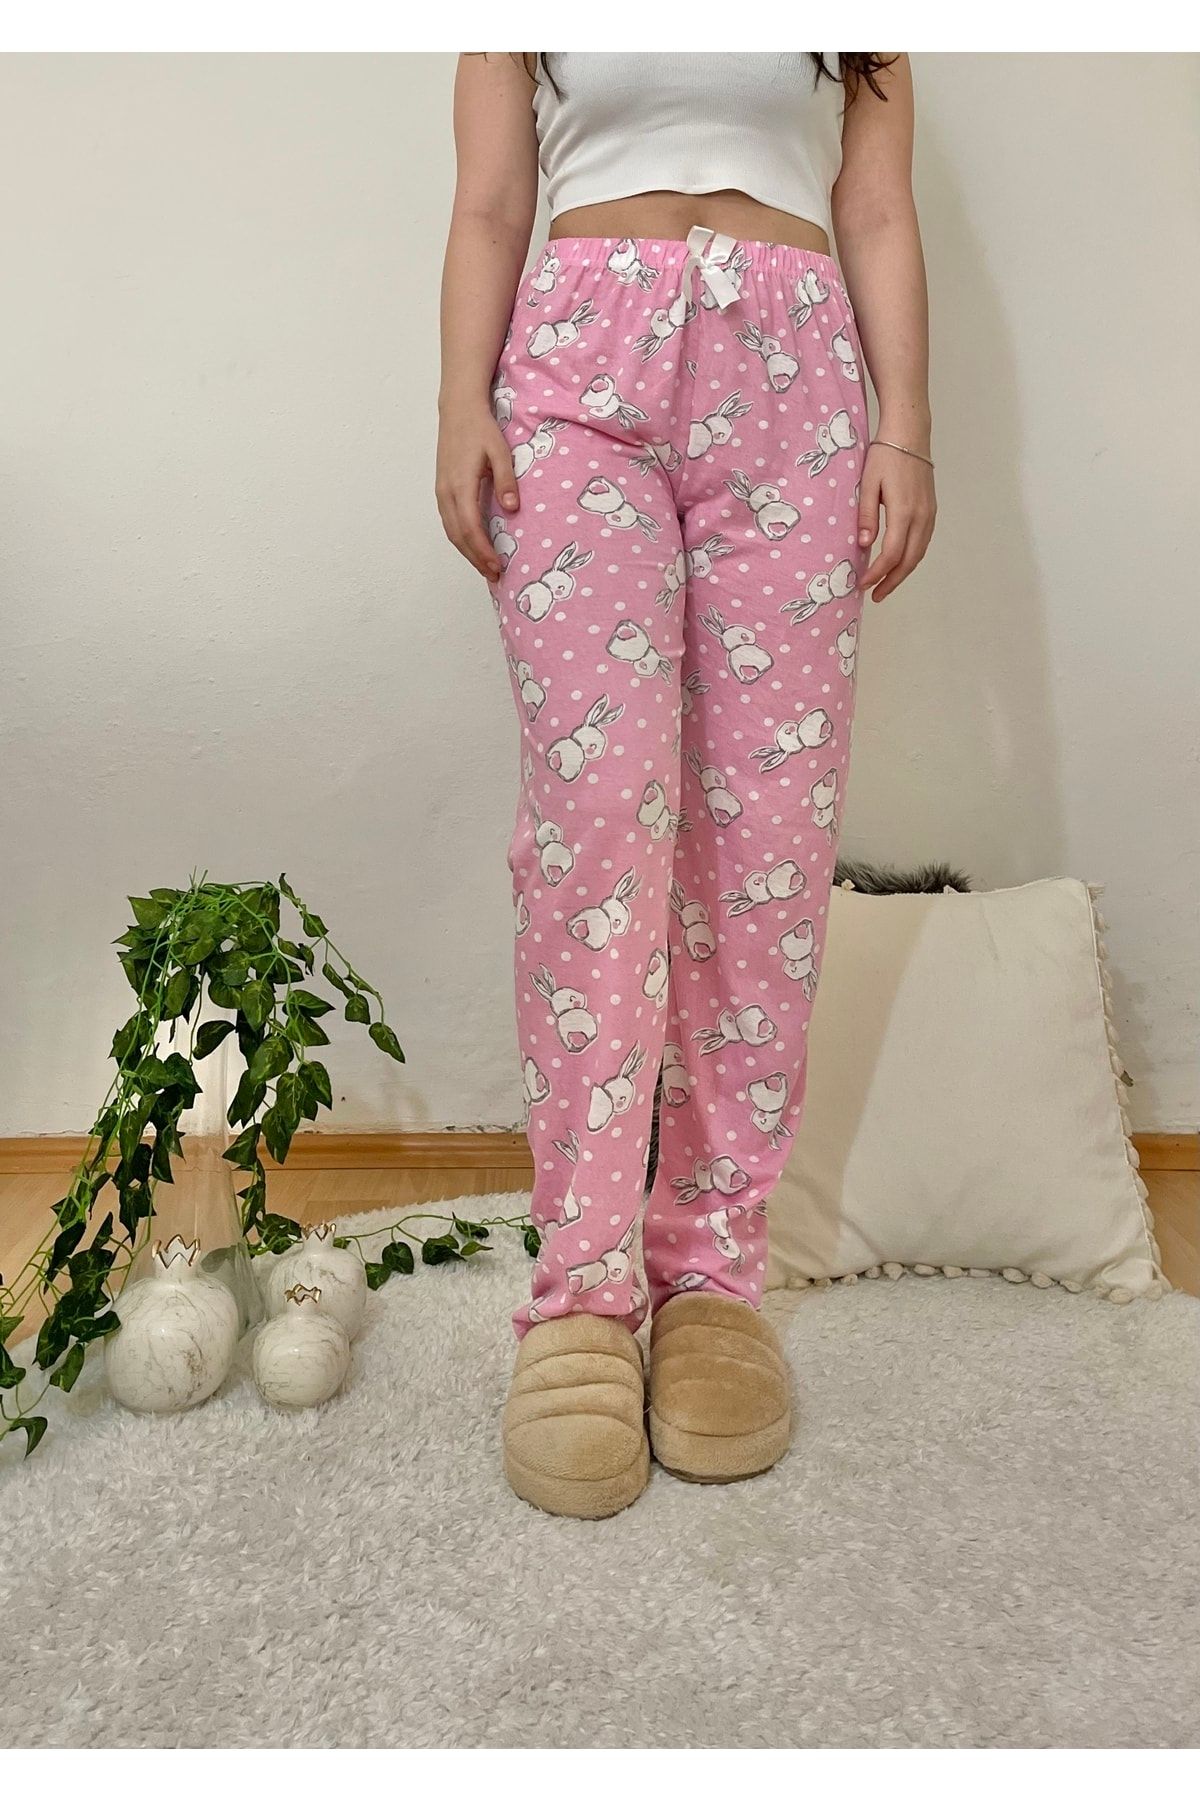 Betimoda Women's Pajama Bottoms Large Rabbit Pink with Ribbon - Trendyol